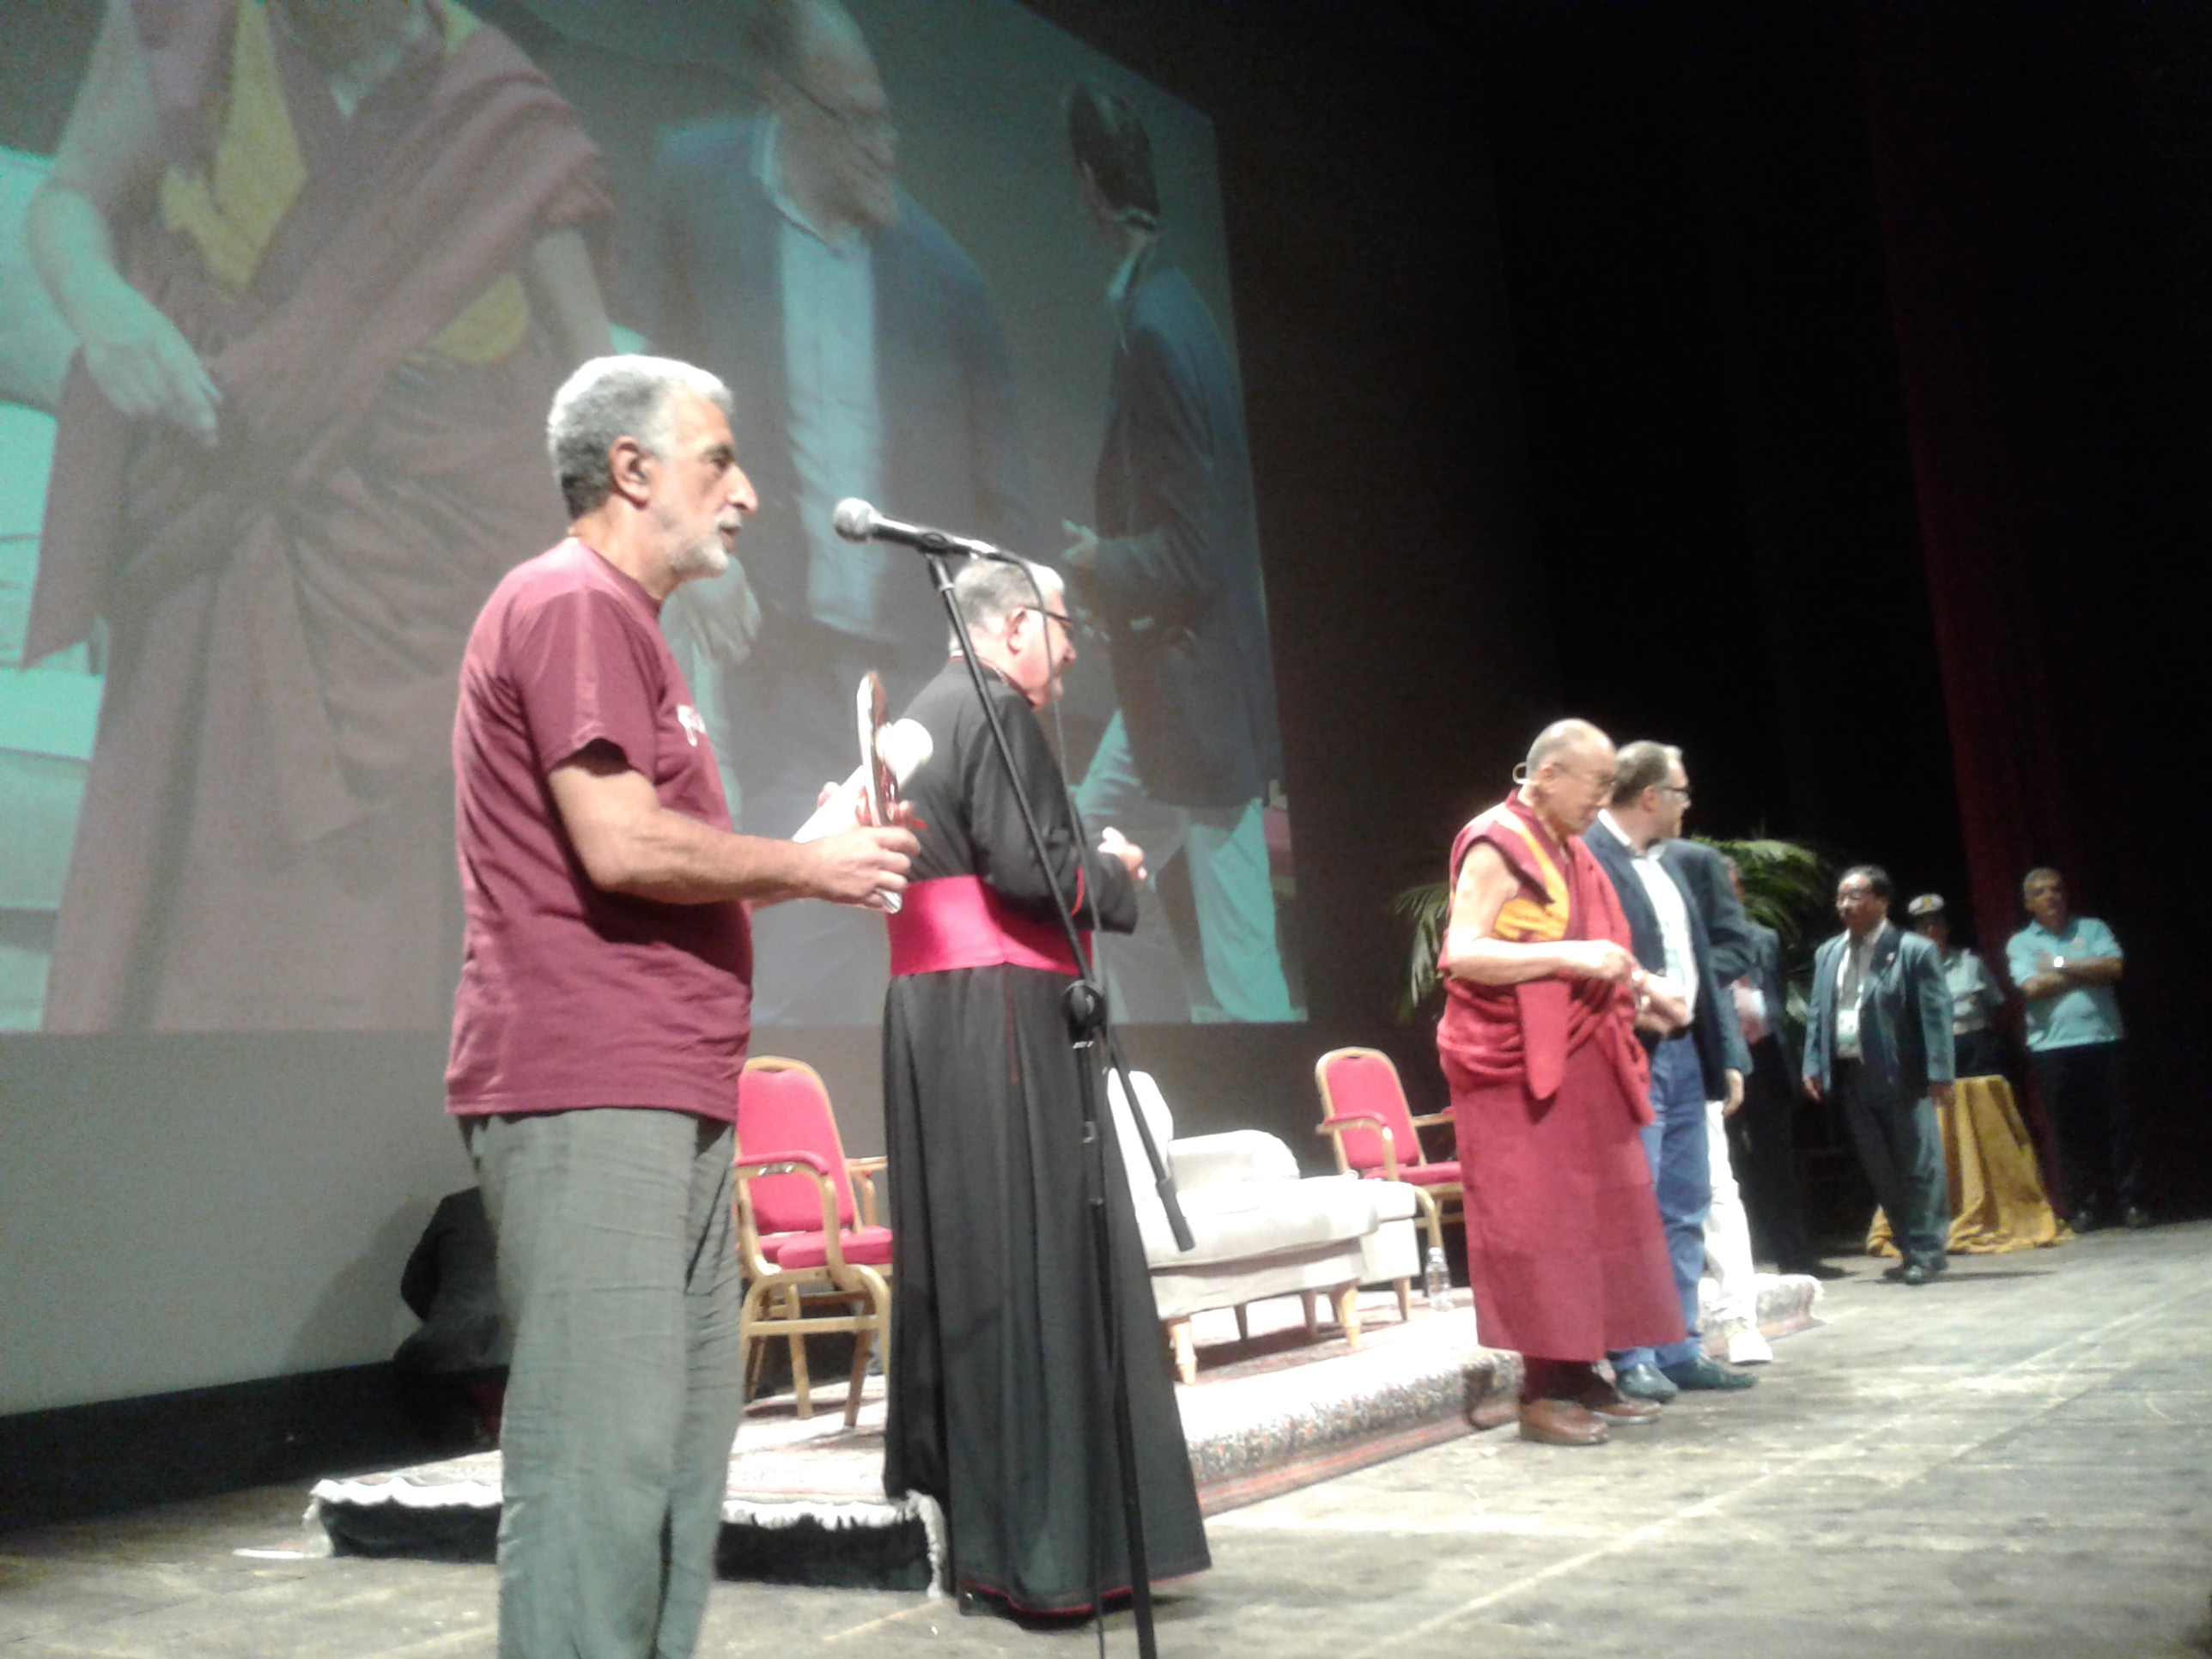 La tappa messinese del Dalai Lama, Accorinti conferisce il premio: “Costruttori di pace, giustizia e nonviolenza – Città di Messina”